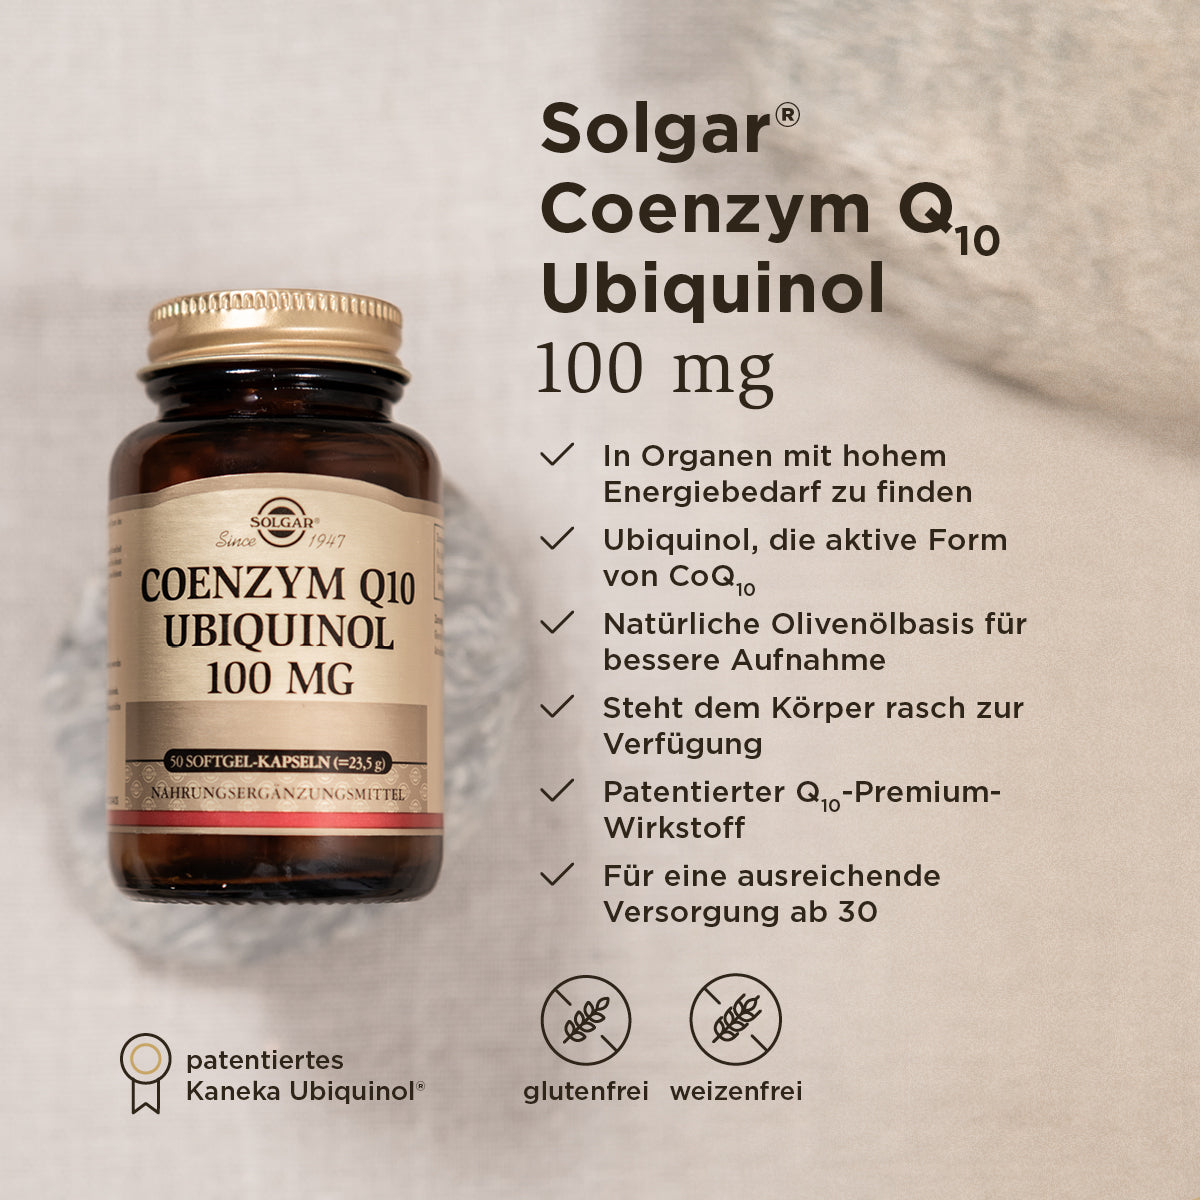 Grafik der Benefits des Solgar coenzym q10 ubiquinol Produkts